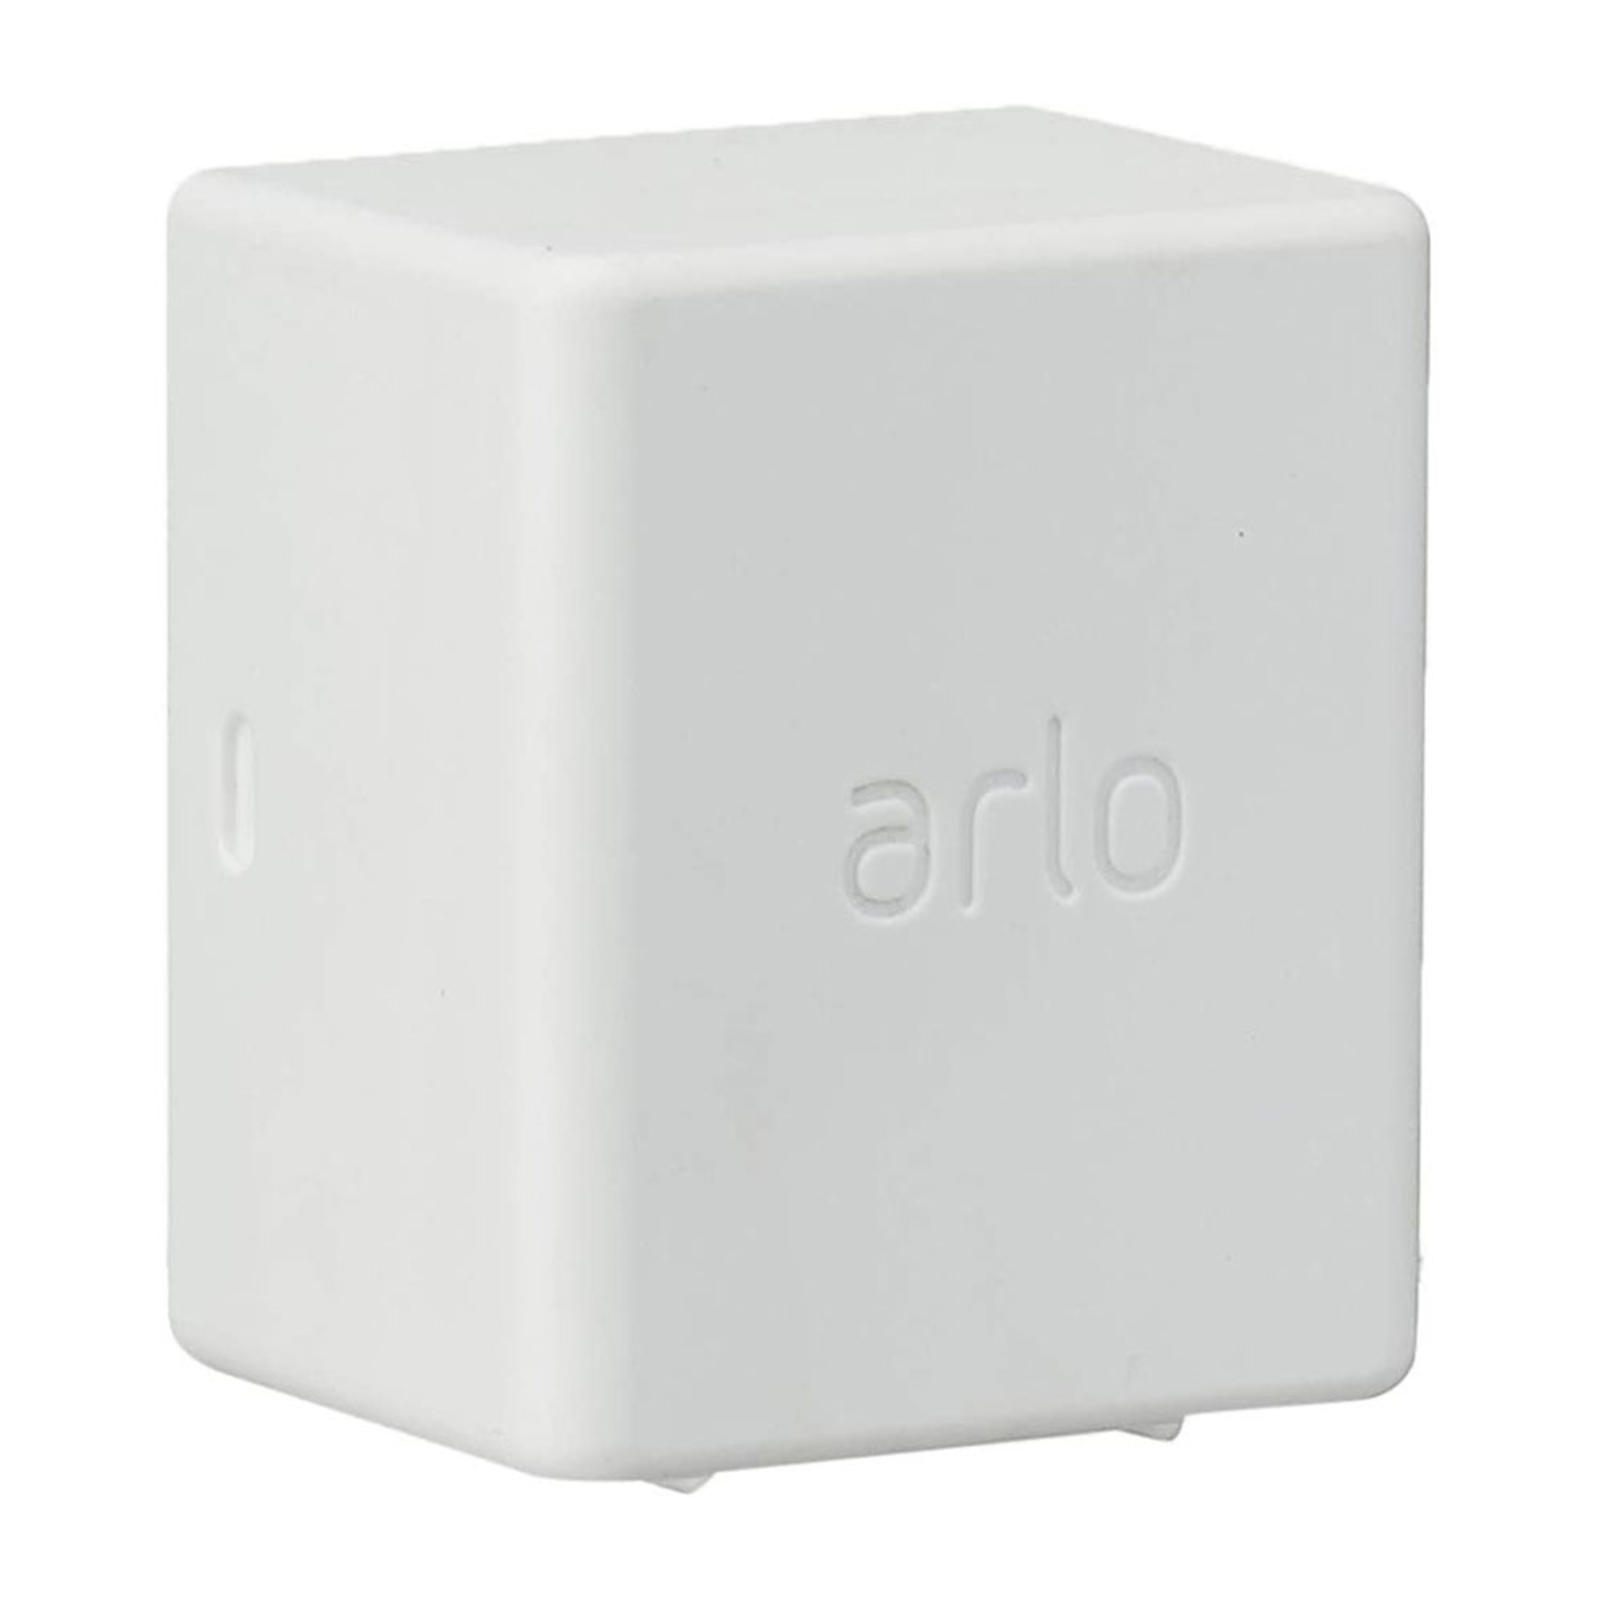 Arlo extra batterij voor beveiligingscamera Ultra, Pro3